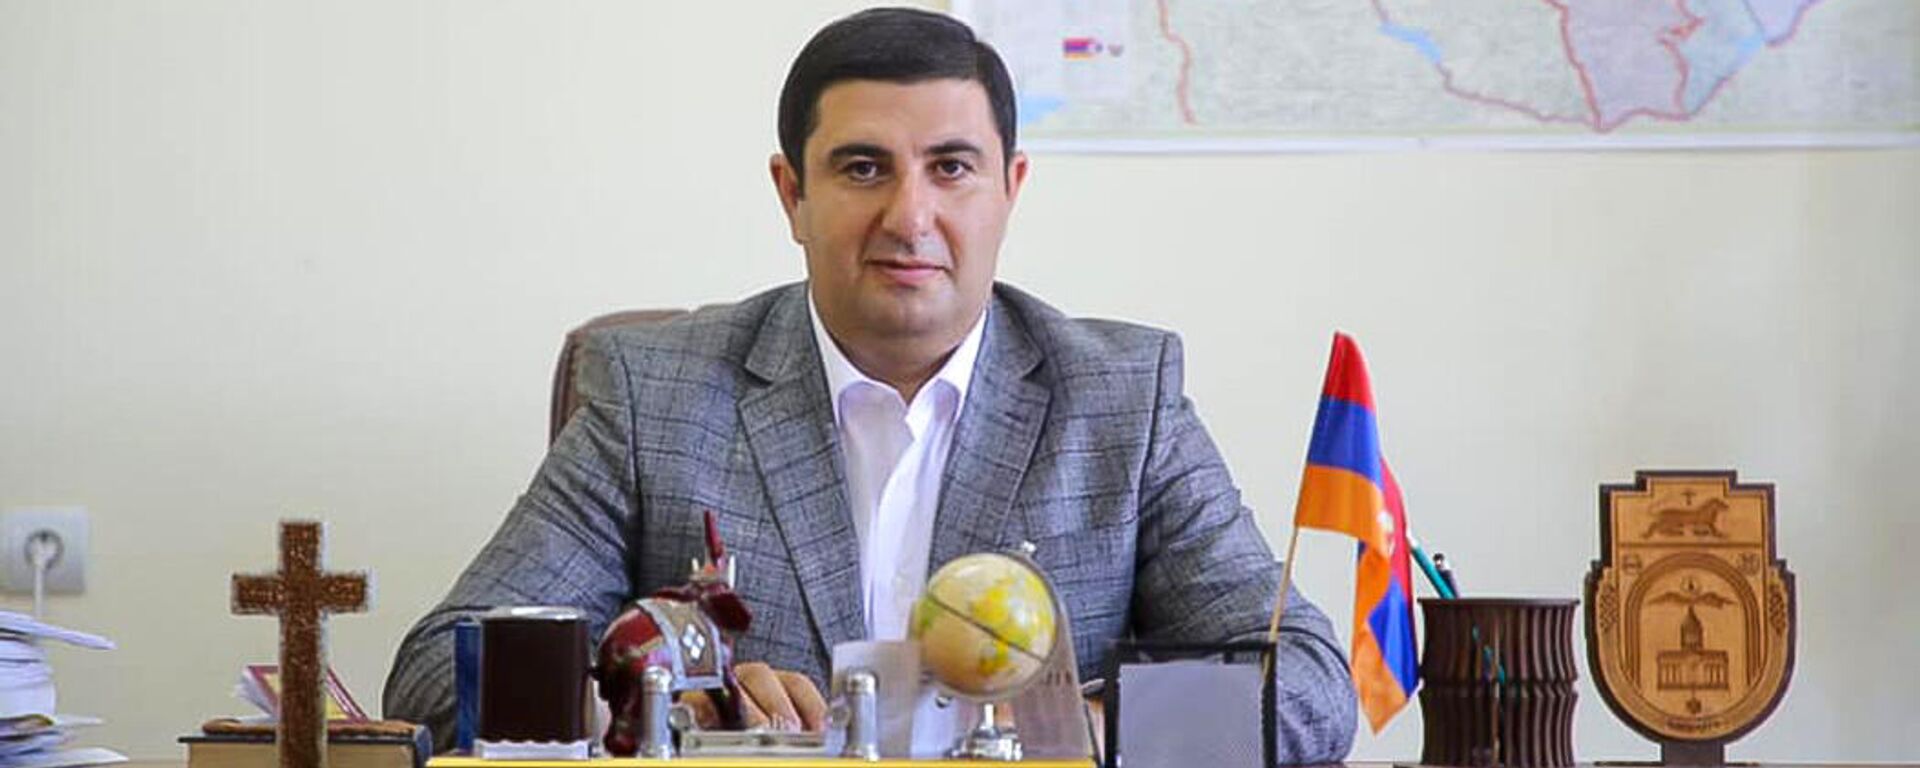 Кандидат в мэры Гюмри от партии Просвященная Армения Вардгес Самсонян - Sputnik Армения, 1920, 07.12.2021